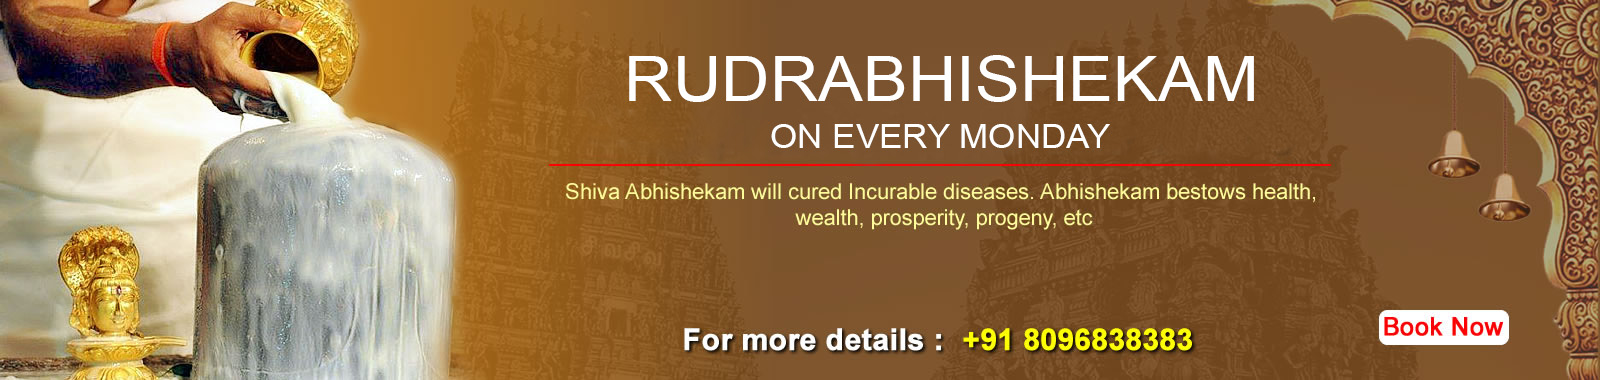 Rudrabhishekam